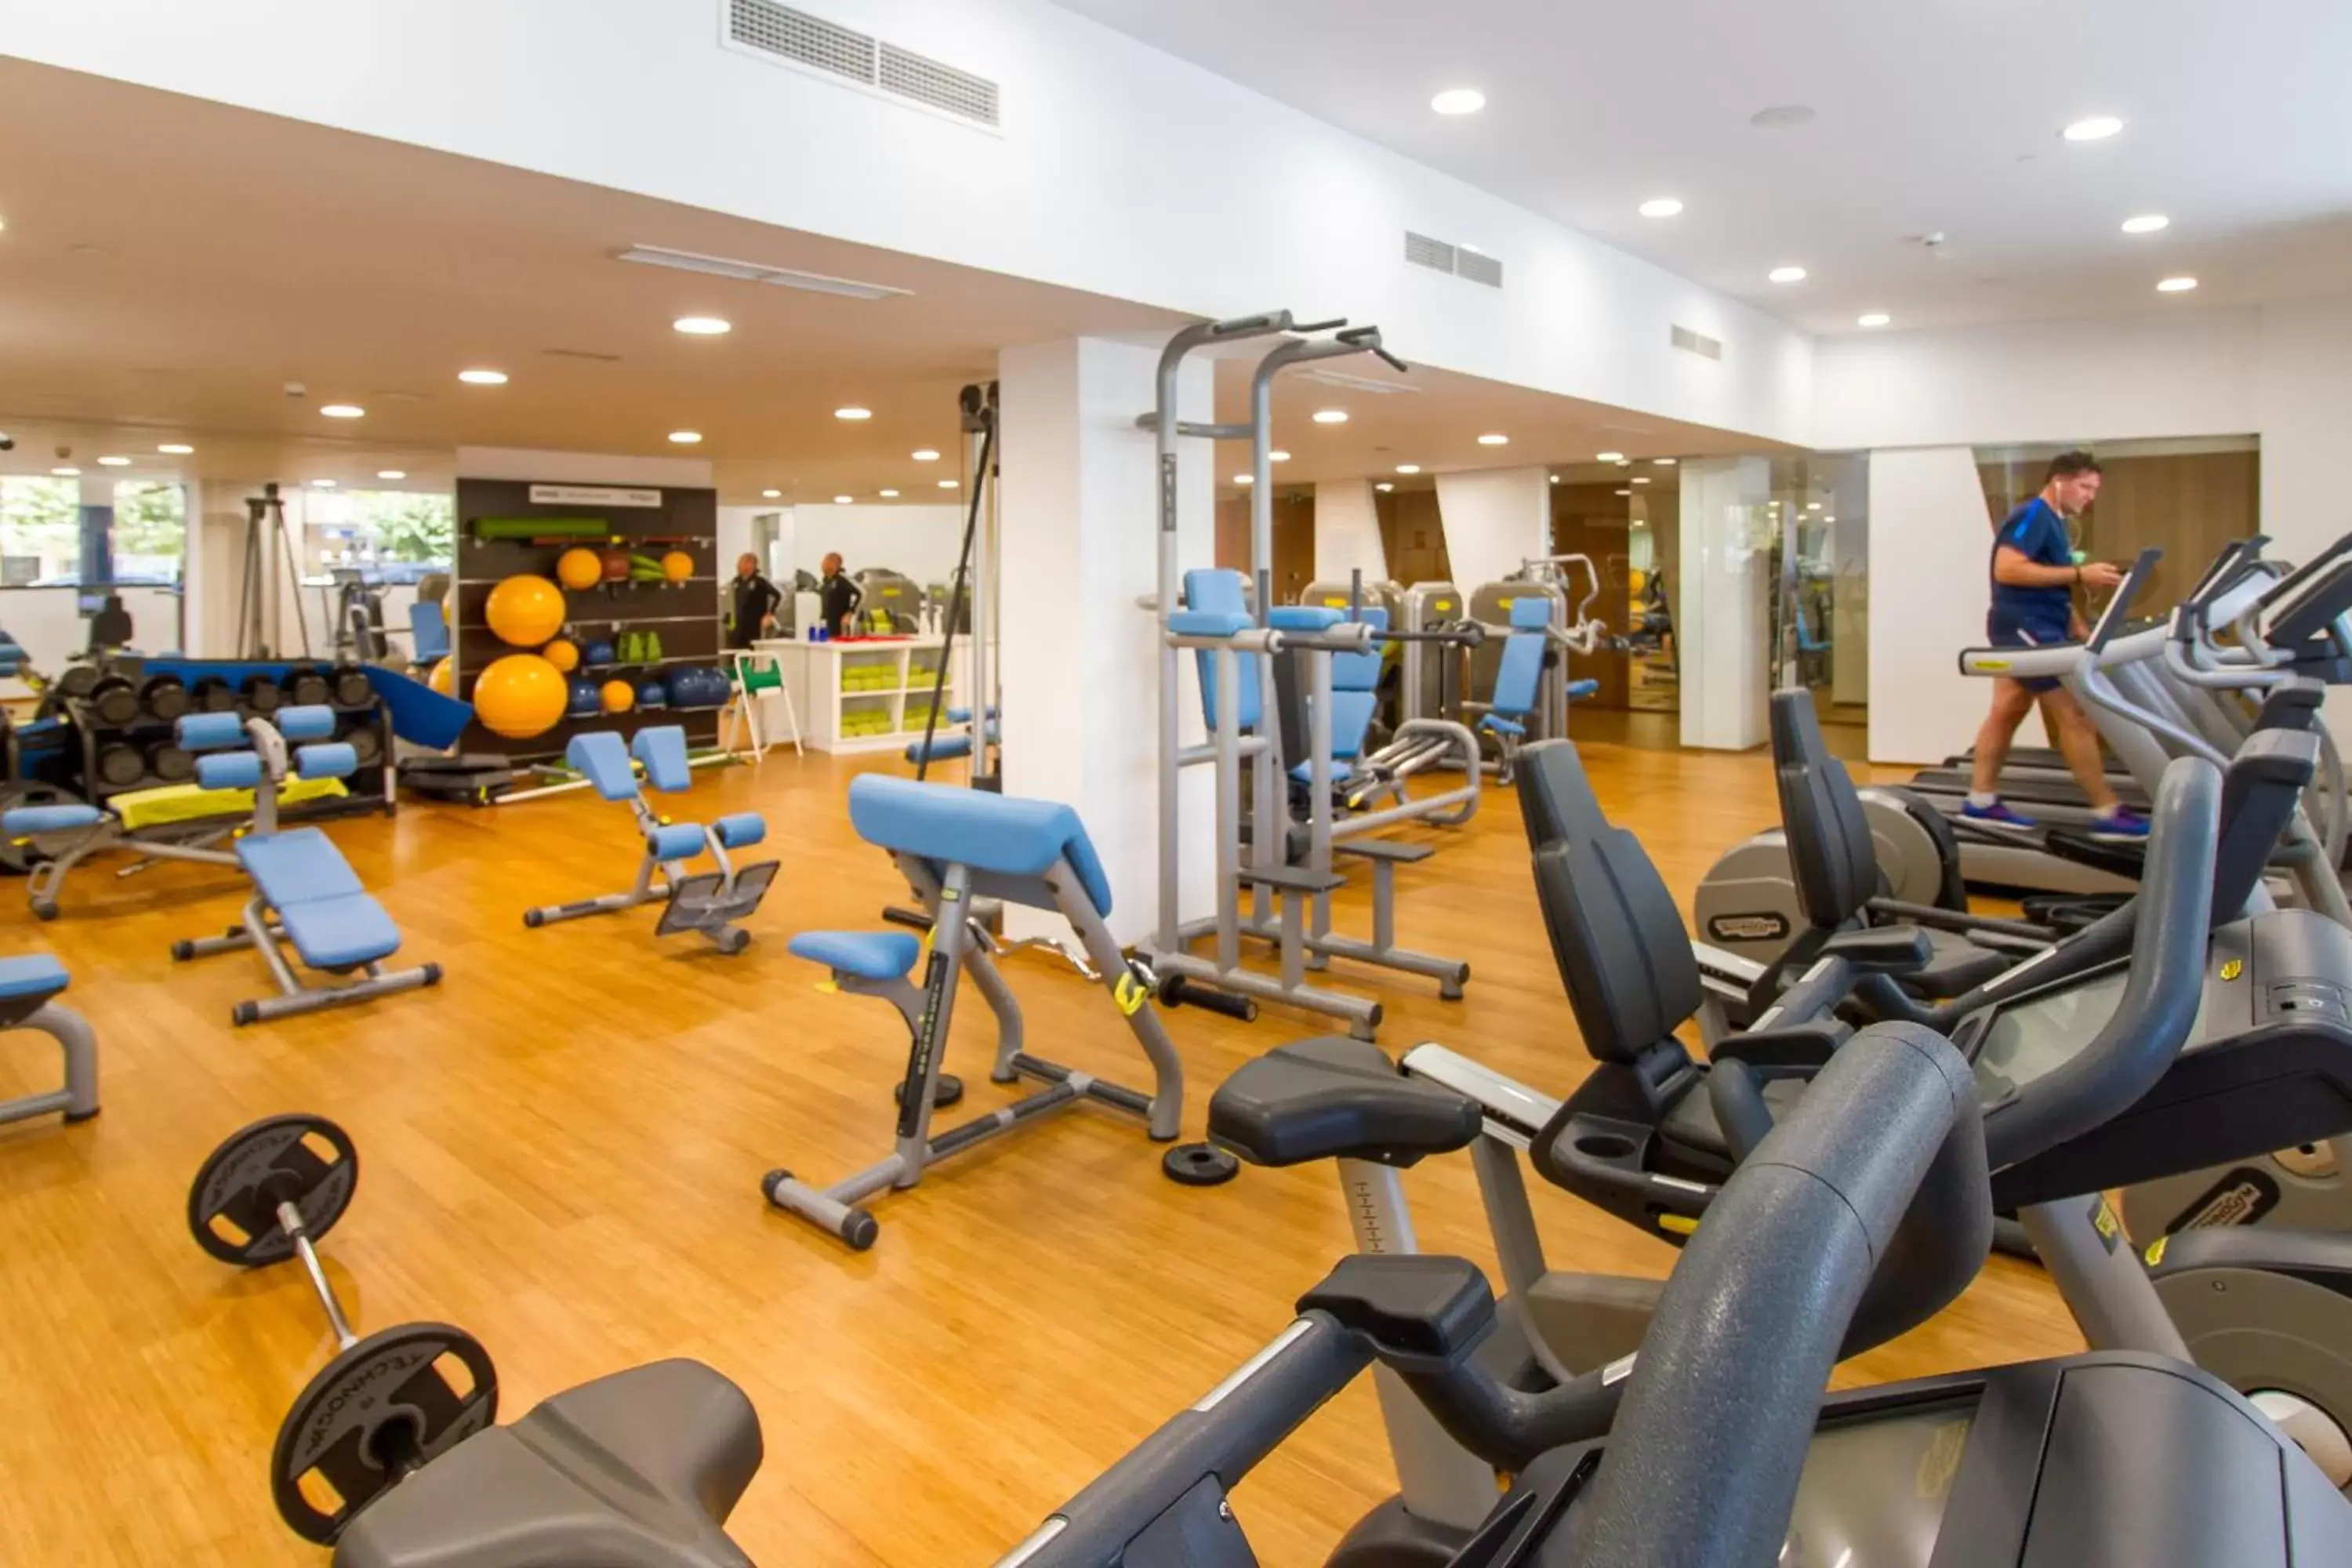 Fitness centre/facilities, Fitness Center/Facilities in Suitopía - Sol y Mar Suites Hotel